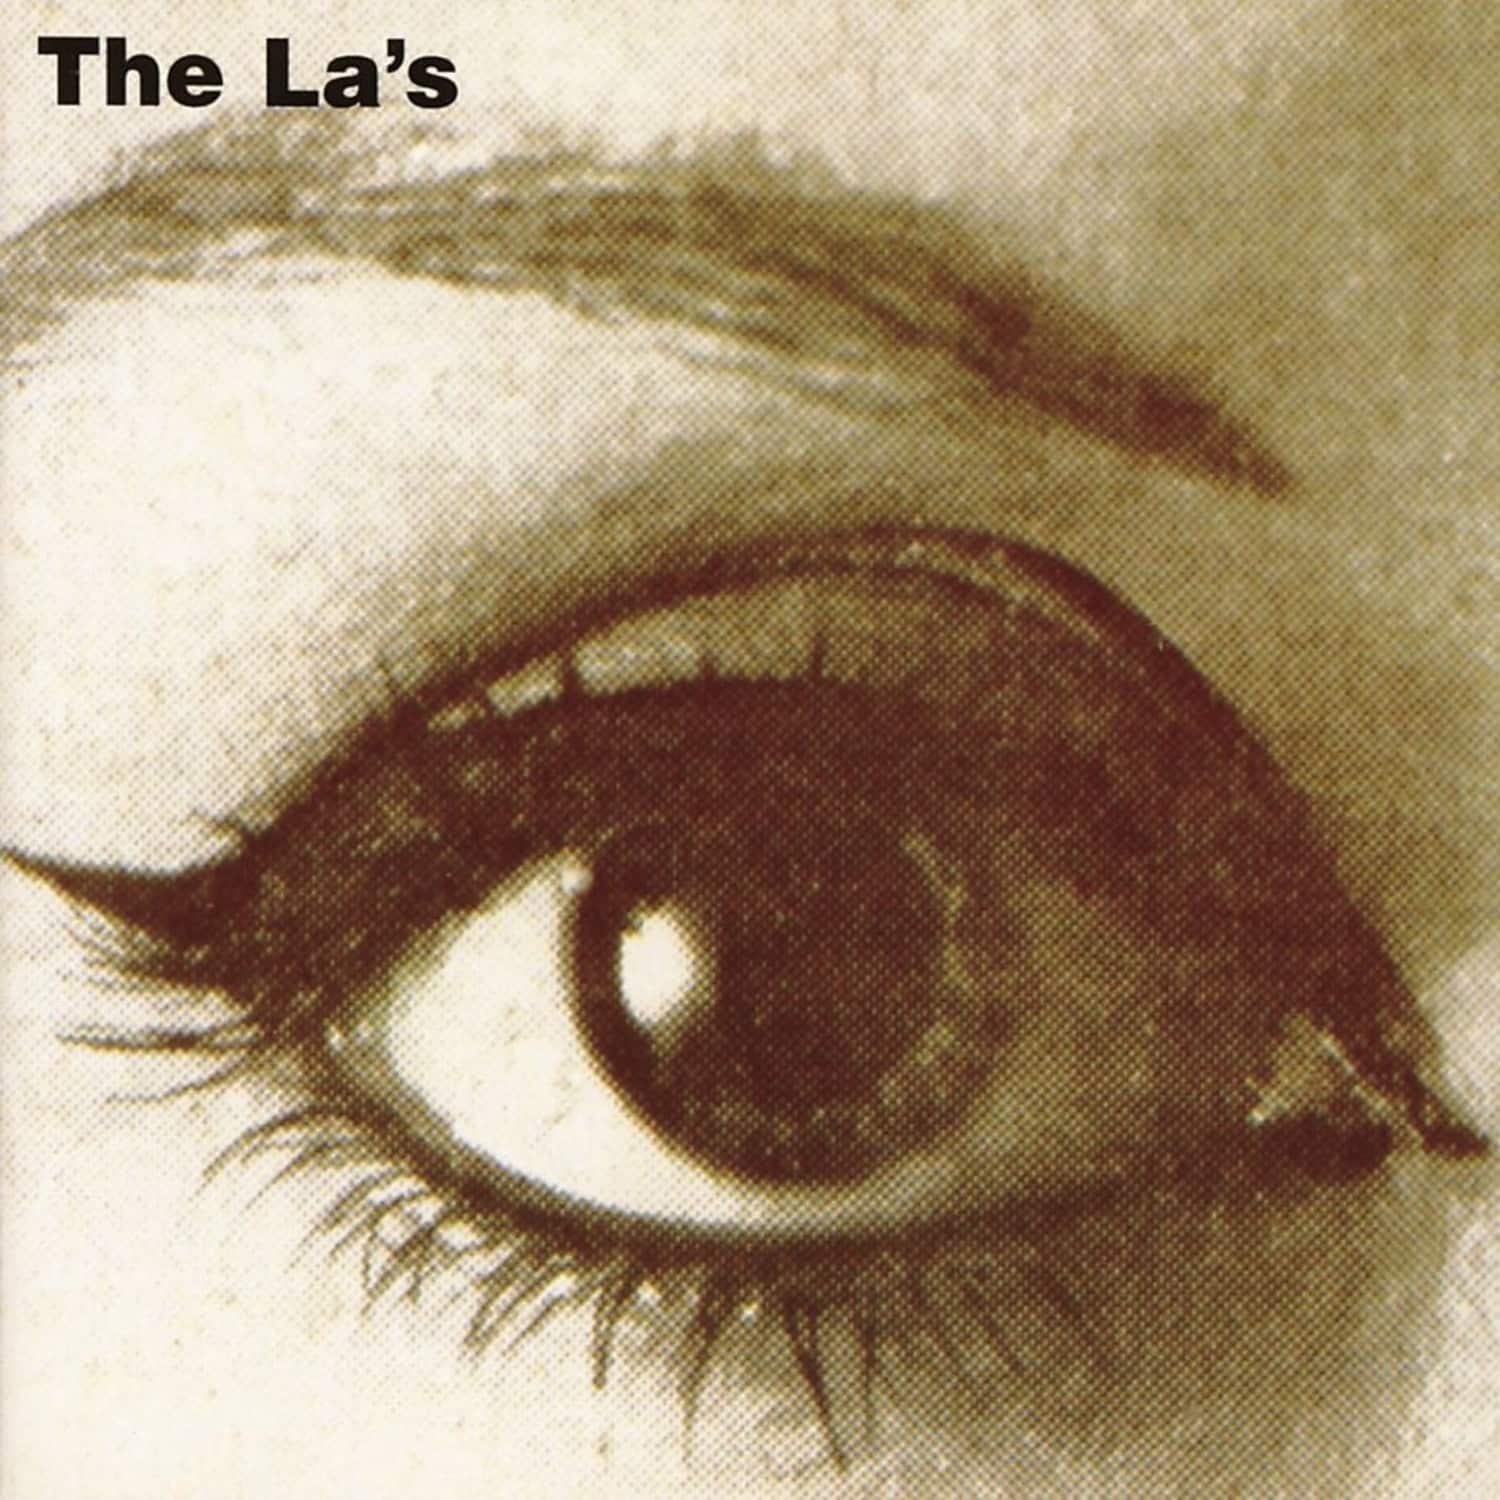 The La s - THE LA S 